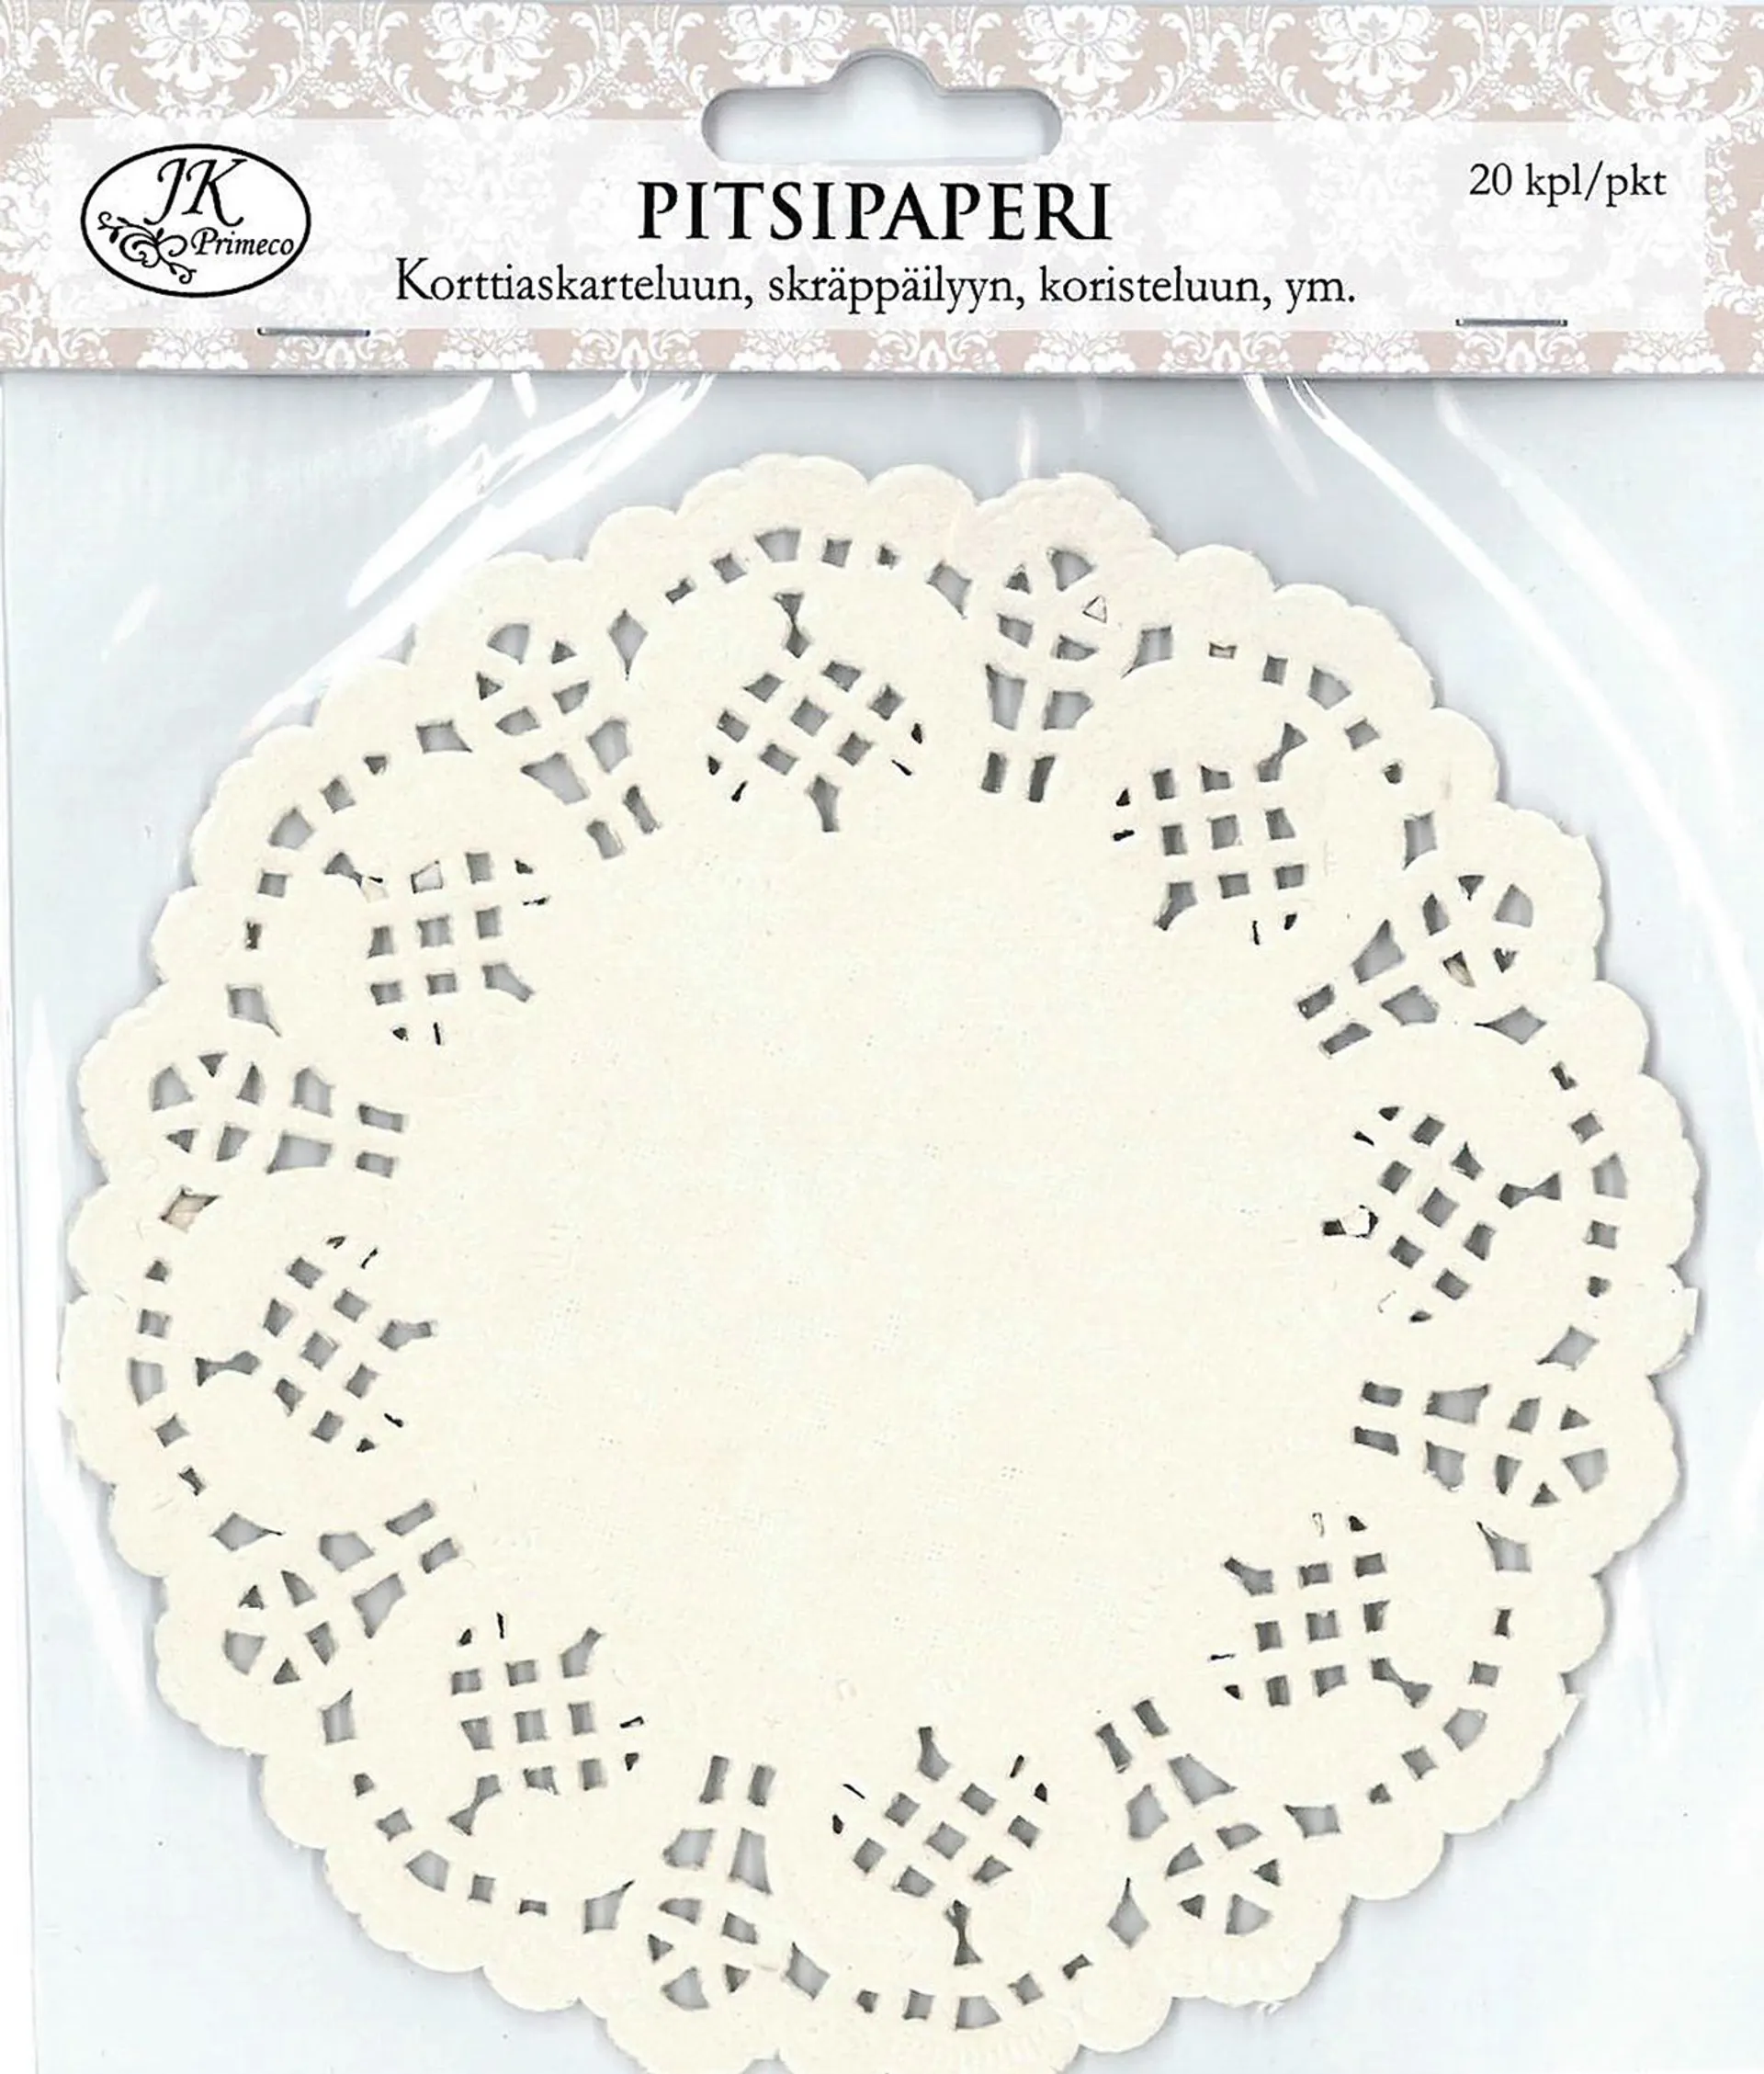 J.K. Primeco pitsipaperi iso ympyrä luonnonvalkoinen 20kpl/pkt